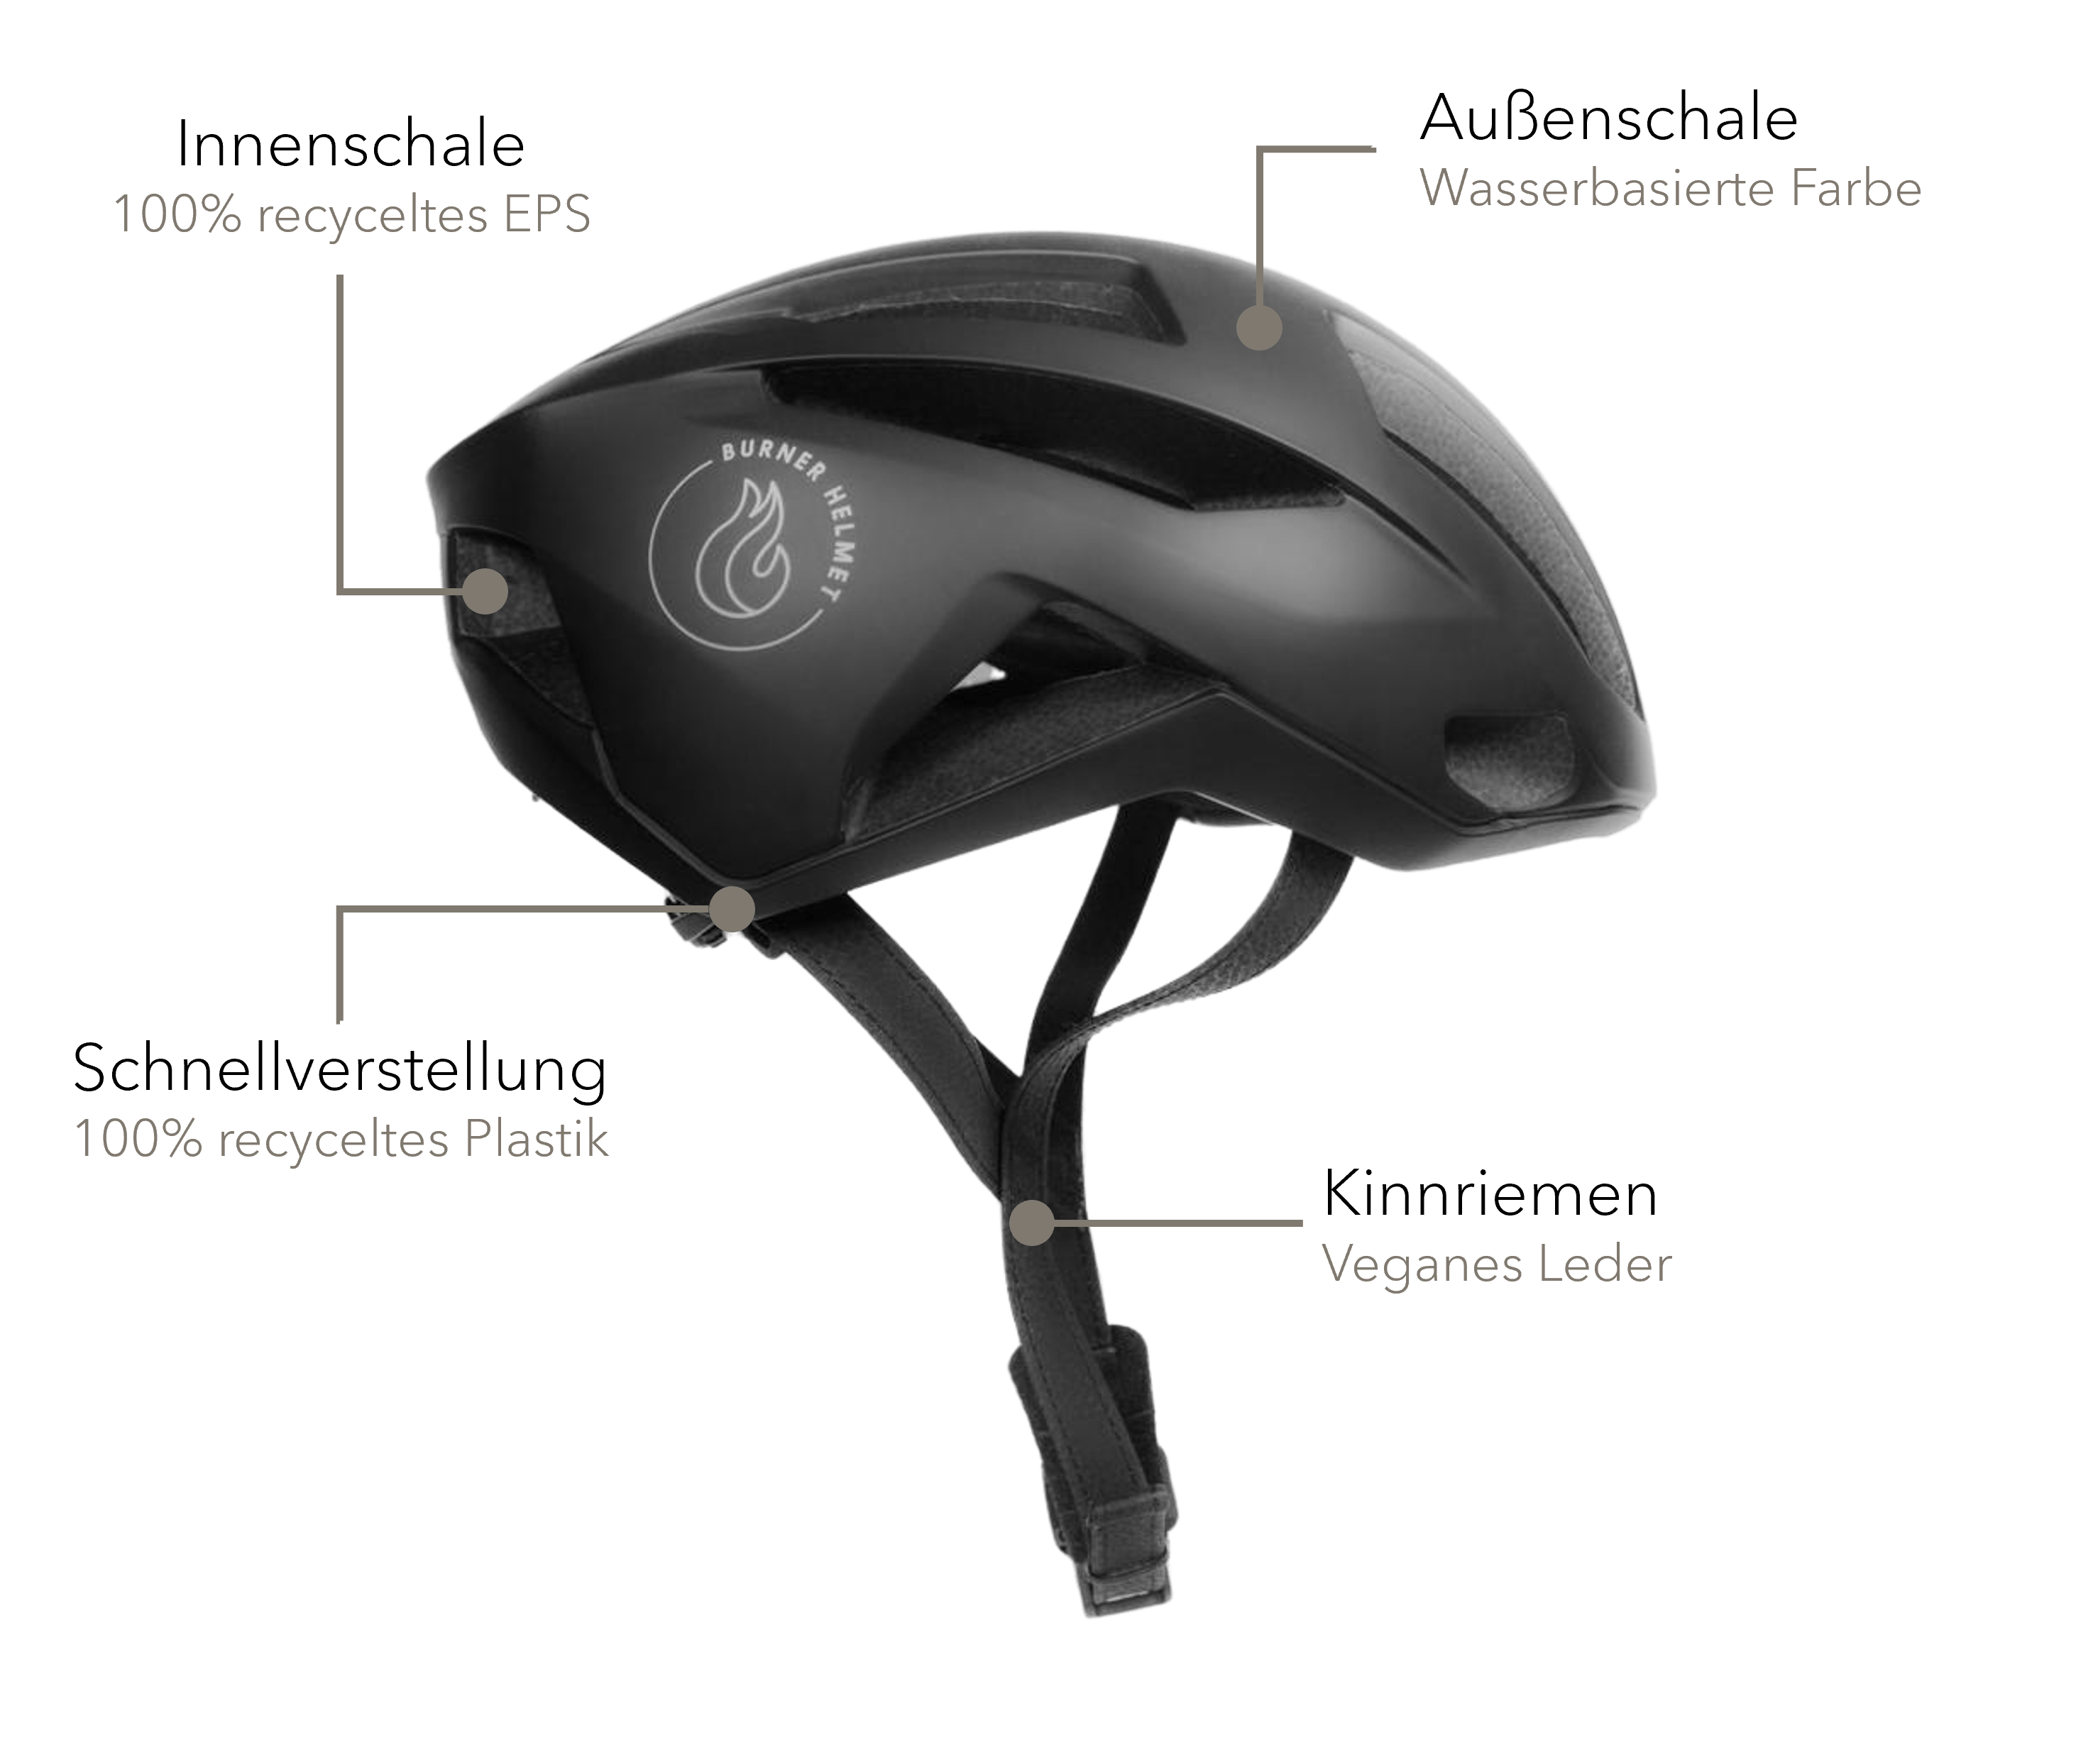 Burner Helmet Features - Innenschale 100% recyceltes EPS -Außenschale wasserbasiertes Farbe -Schnellverstellung 100% recyceltes Plastik -Kinnriemen veganes Leder